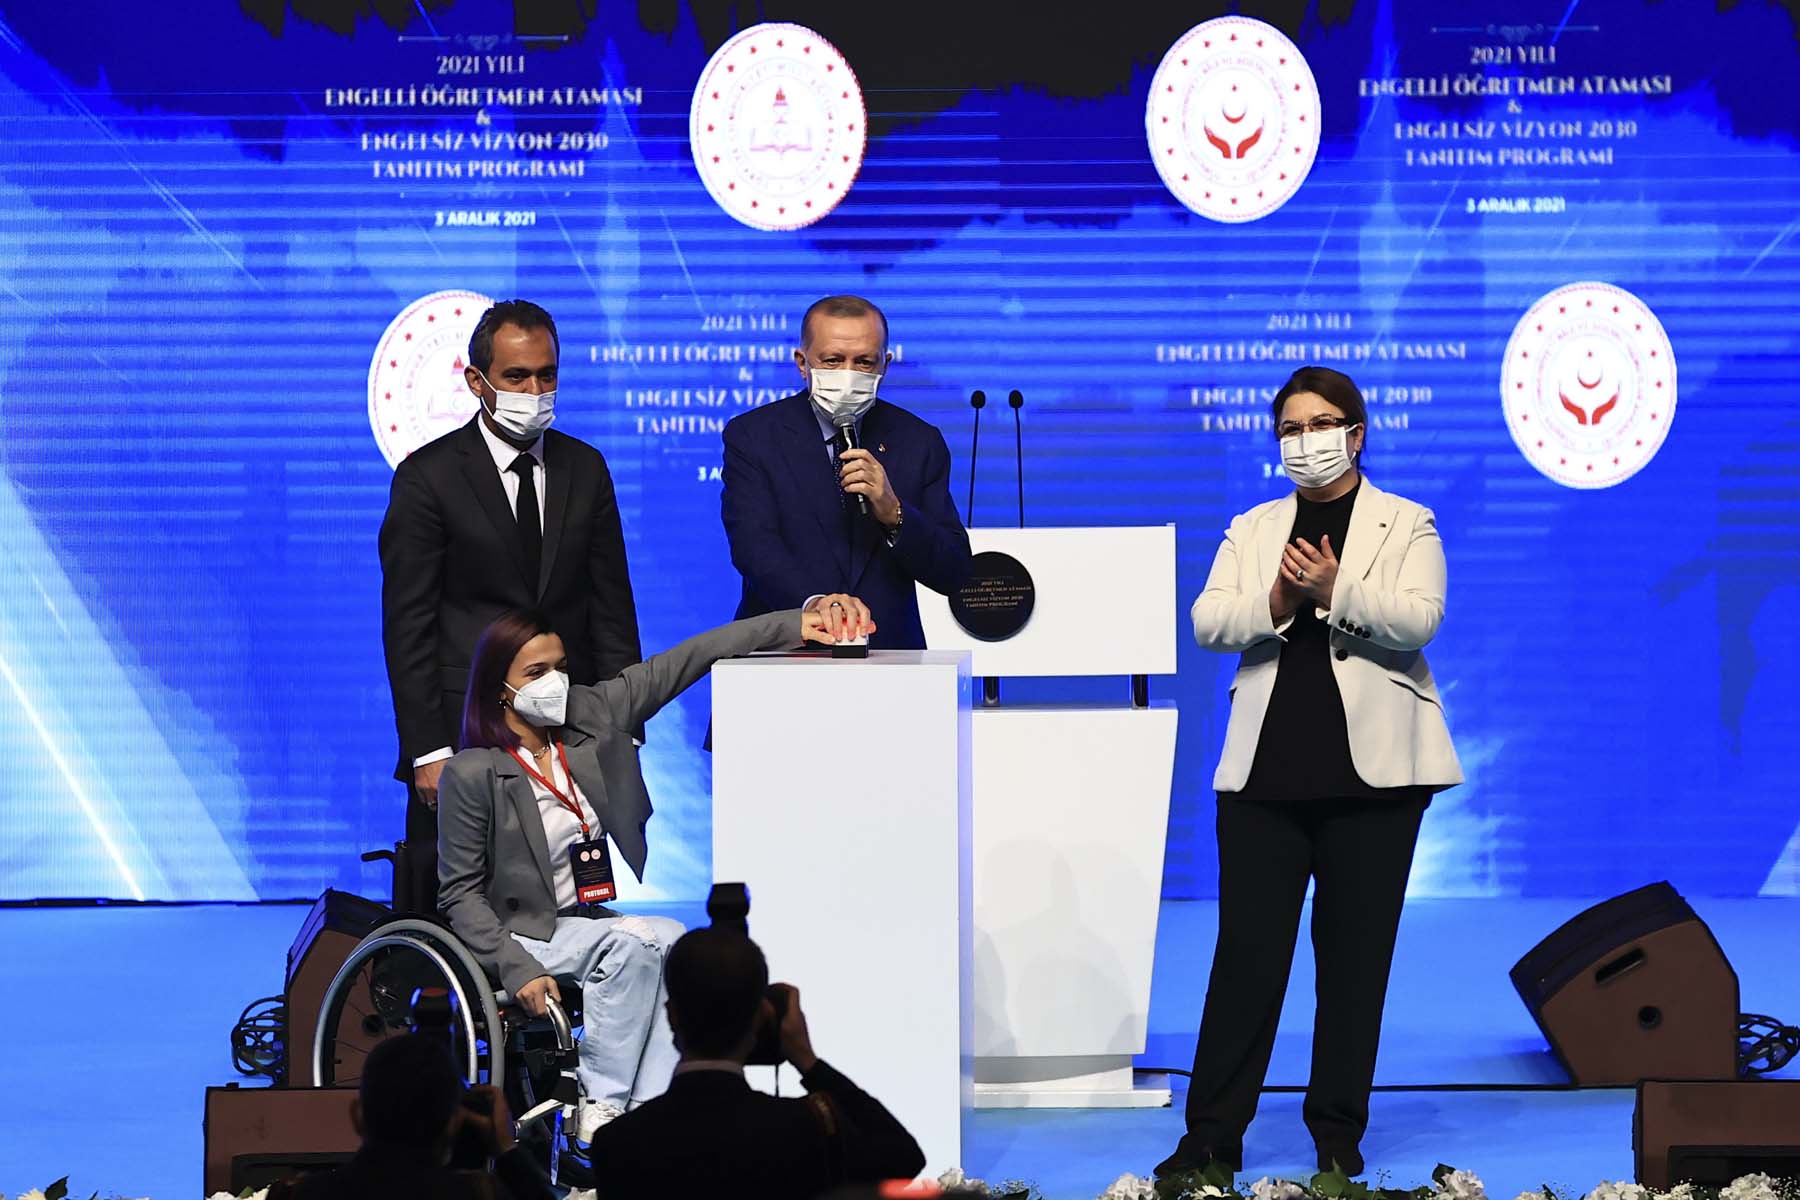 Cumhurbaşkanı Erdoğan, Engelli Öğretmen Ataması ve Engelsiz Vizyon 2030 Tanıtım Toplantısı'nda konuştu: Engellilerimizin geçmişten gelen sorunlarını çözdük